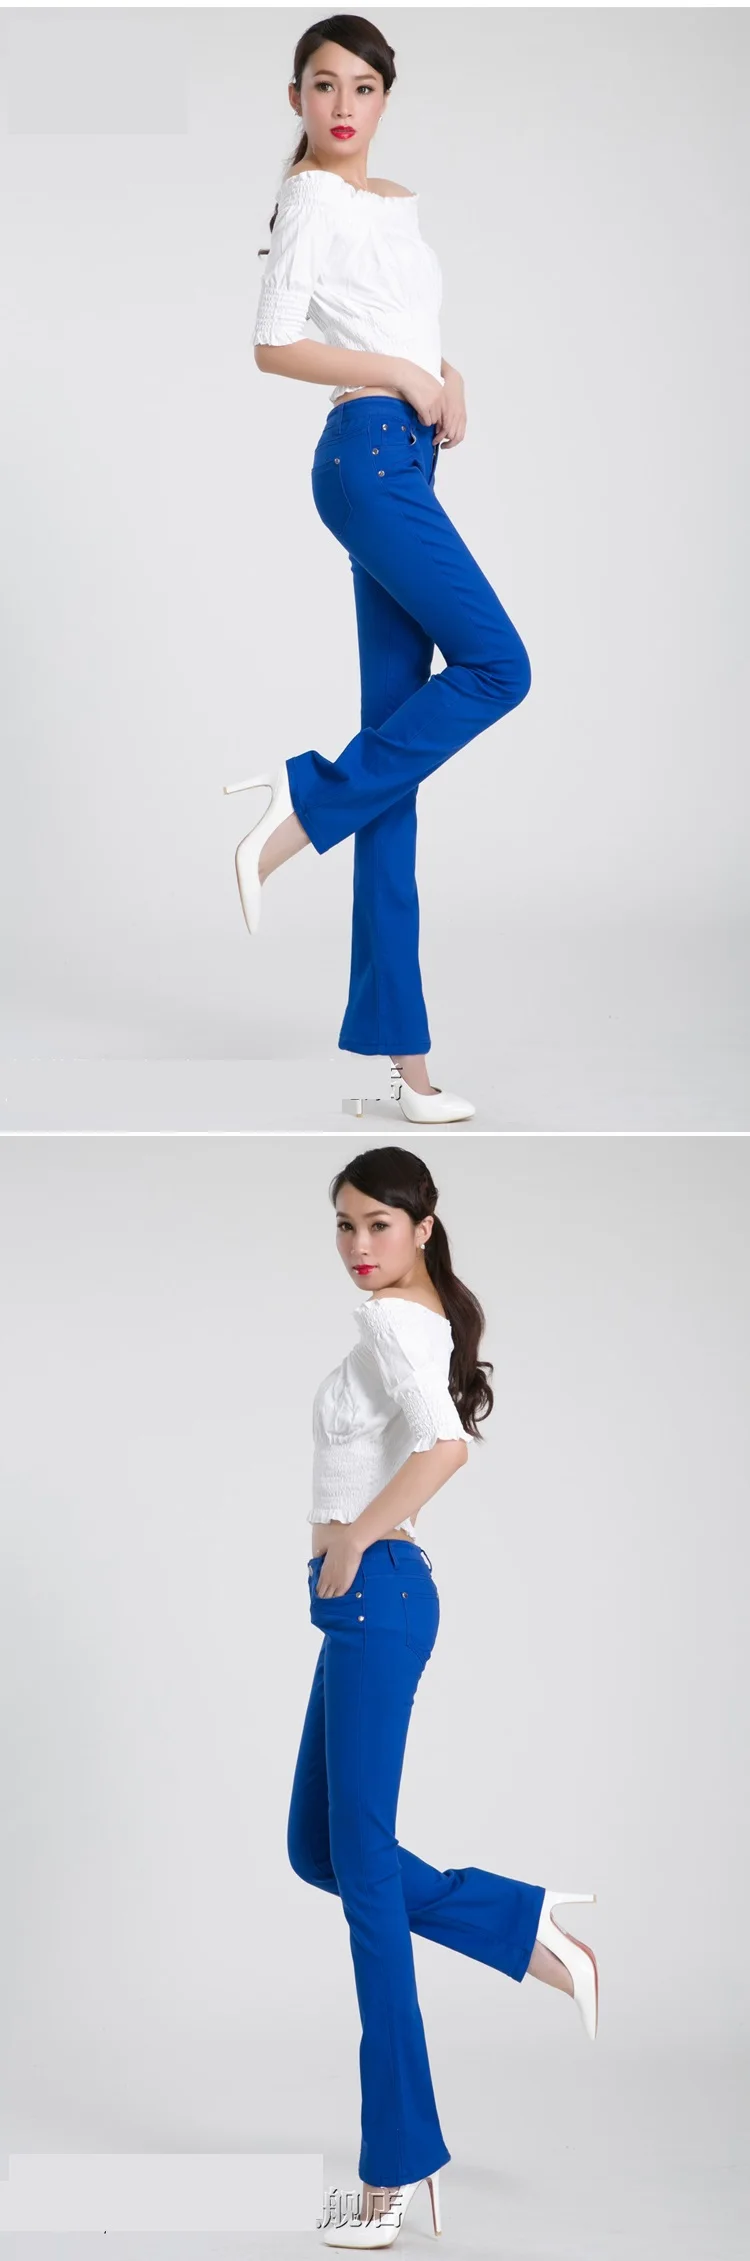 Осень г. женские женская одежда новые джинсовые штаны для летние джинсовые Чистый цвет цены продвижения брюки KG164 yagenz